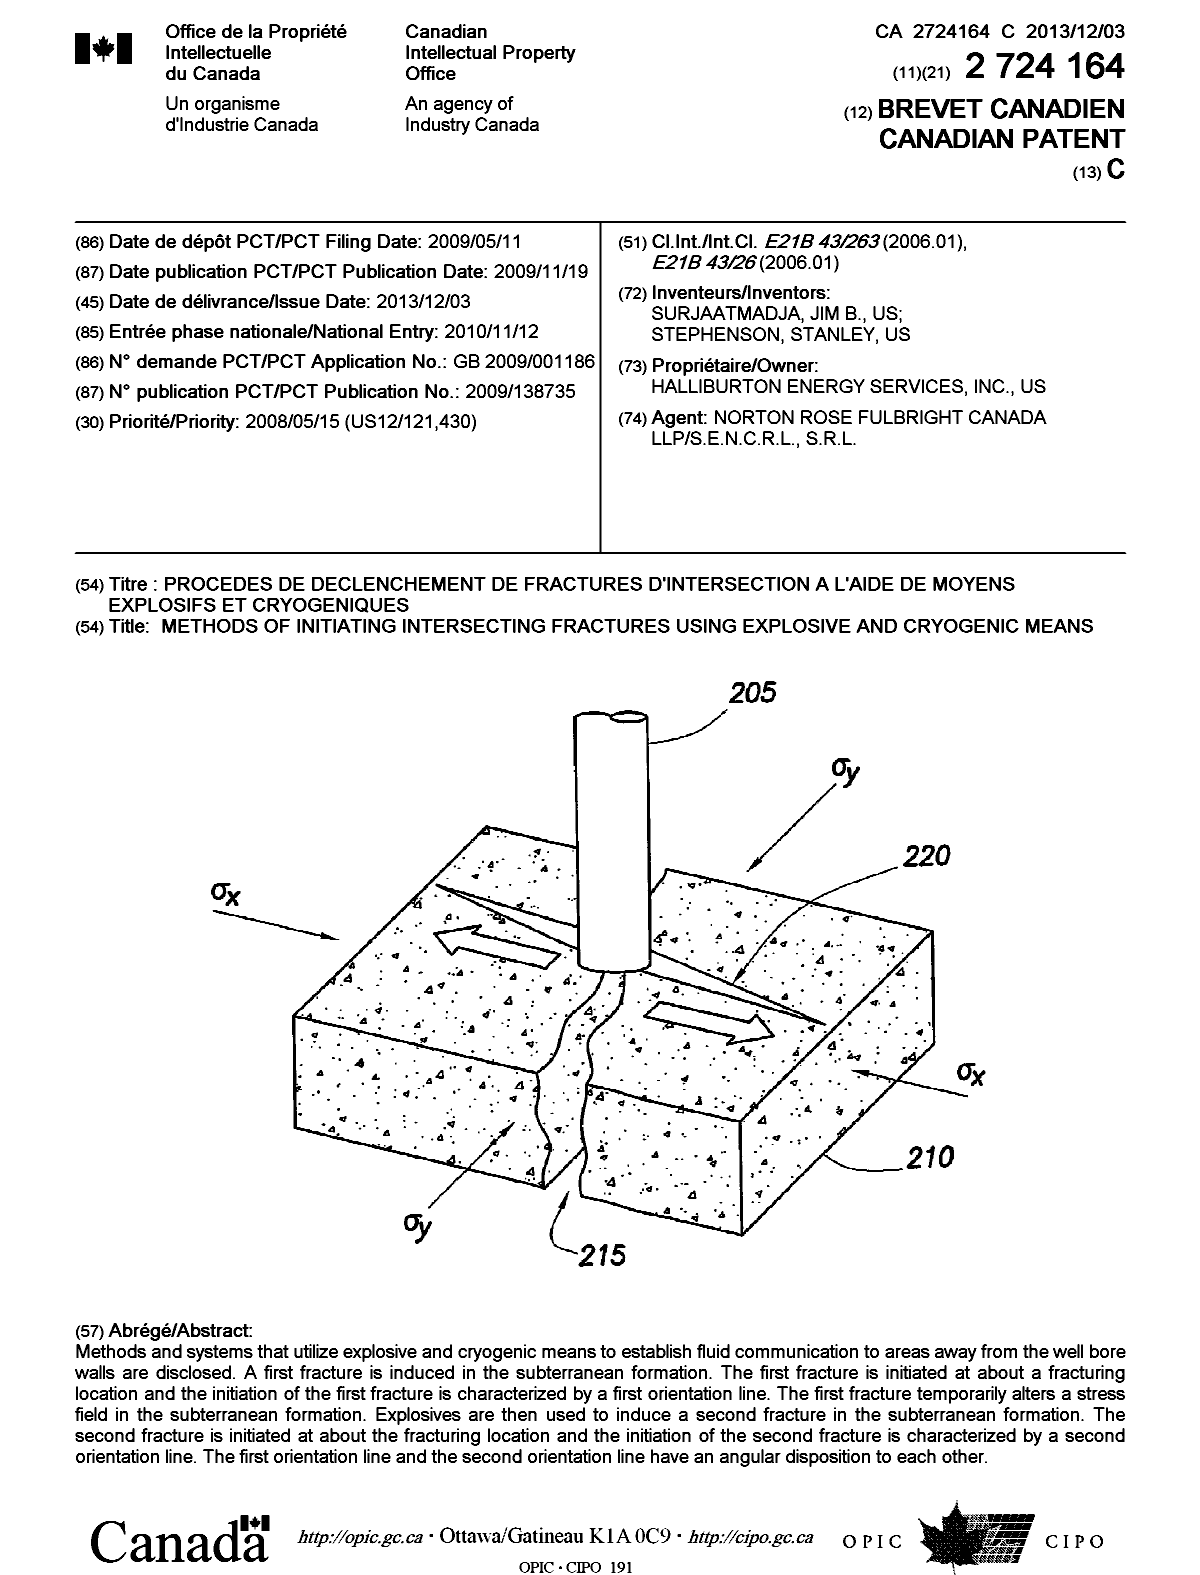 Document de brevet canadien 2724164. Page couverture 20131031. Image 1 de 1